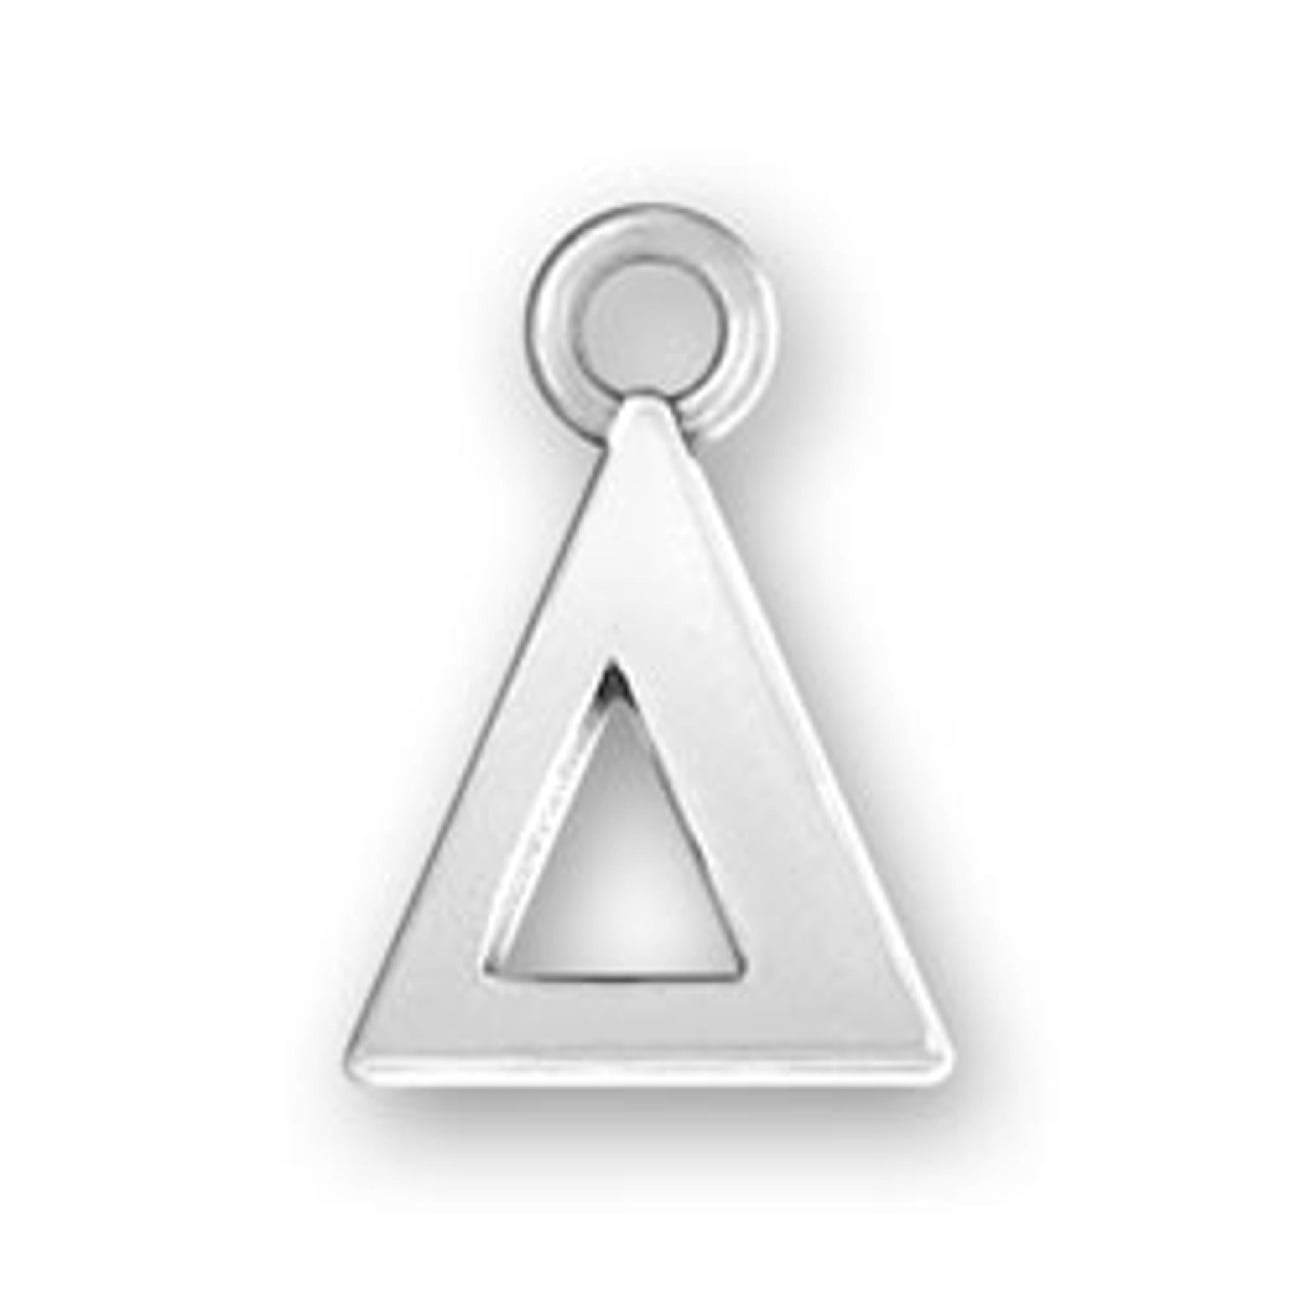 Brand New RARE!!! Delta Sigma Phi Rhodium Silver Charm Pendant 